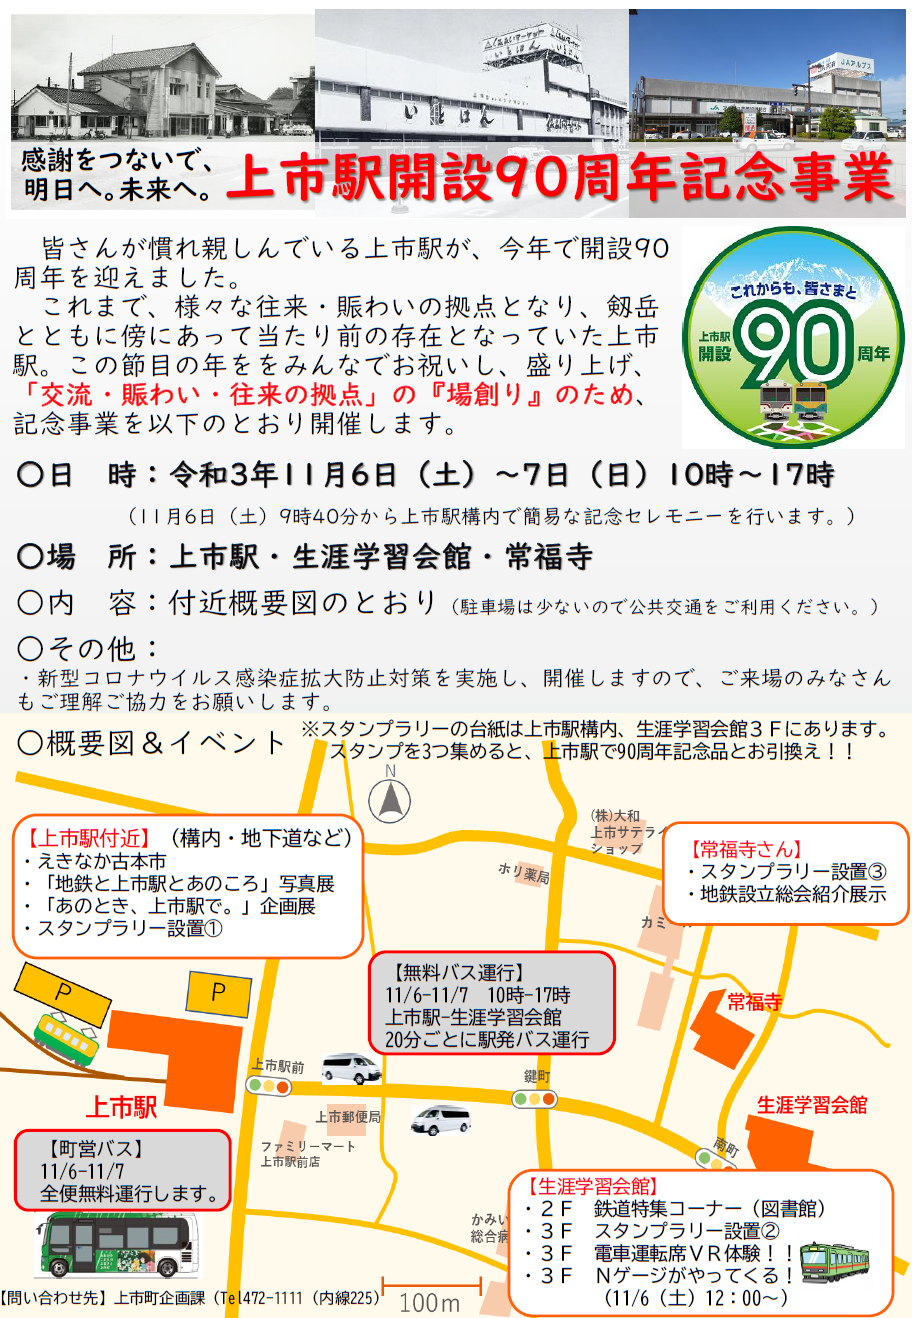 上市駅開設90周年記念事業イベント開催のお知らせ